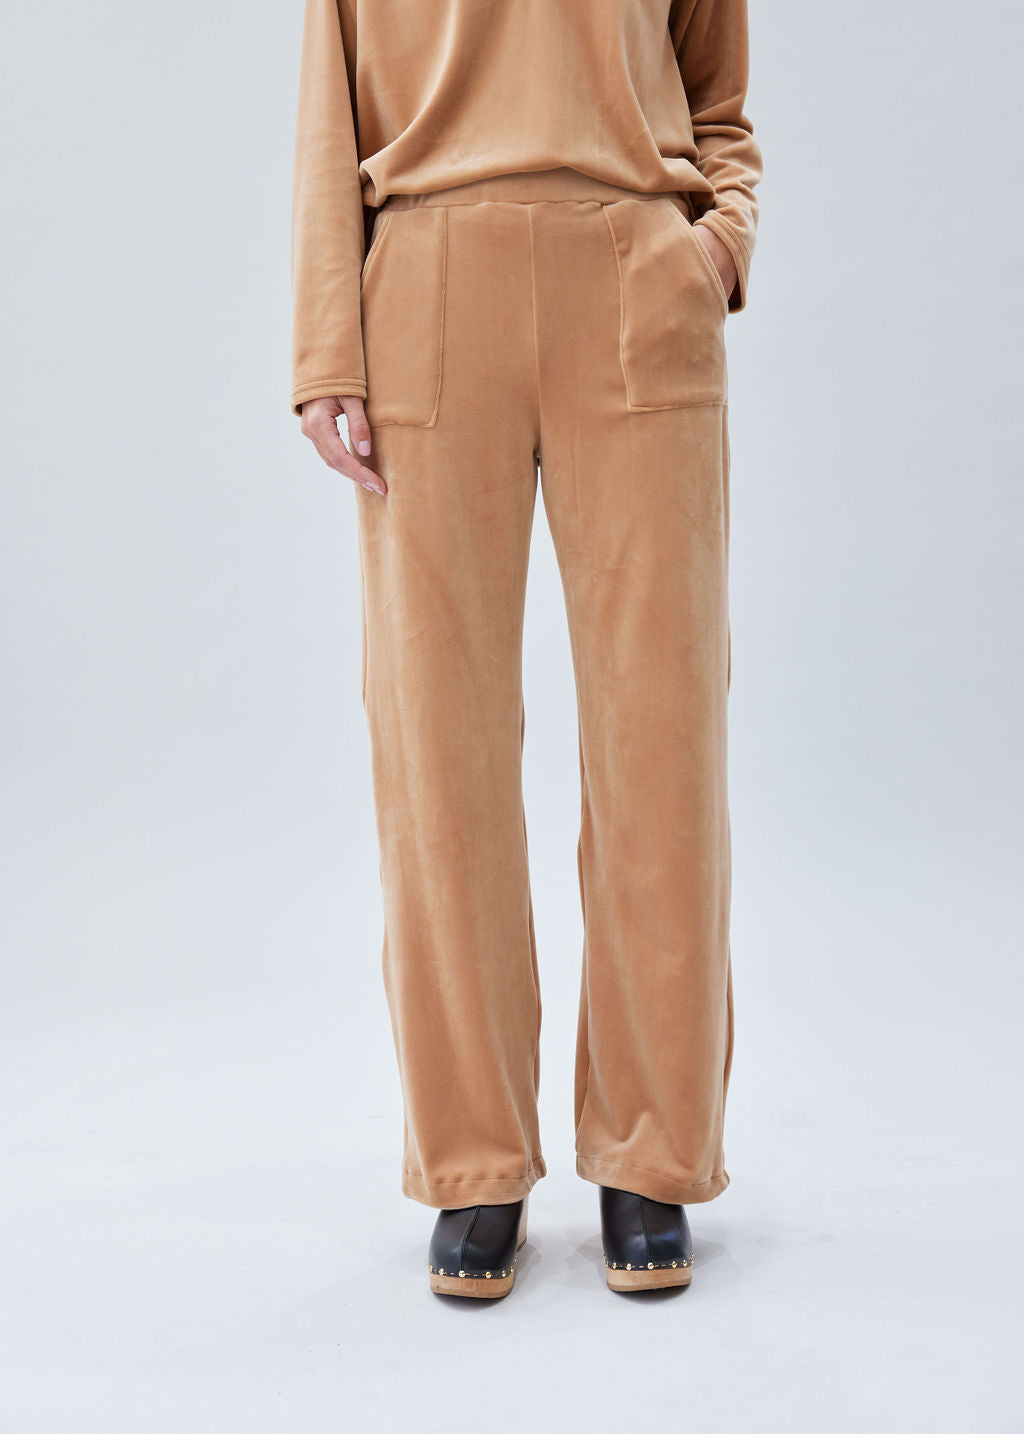 Pantalon velours éponge Beige 1 | Vêtements Femme Lauren Vidal